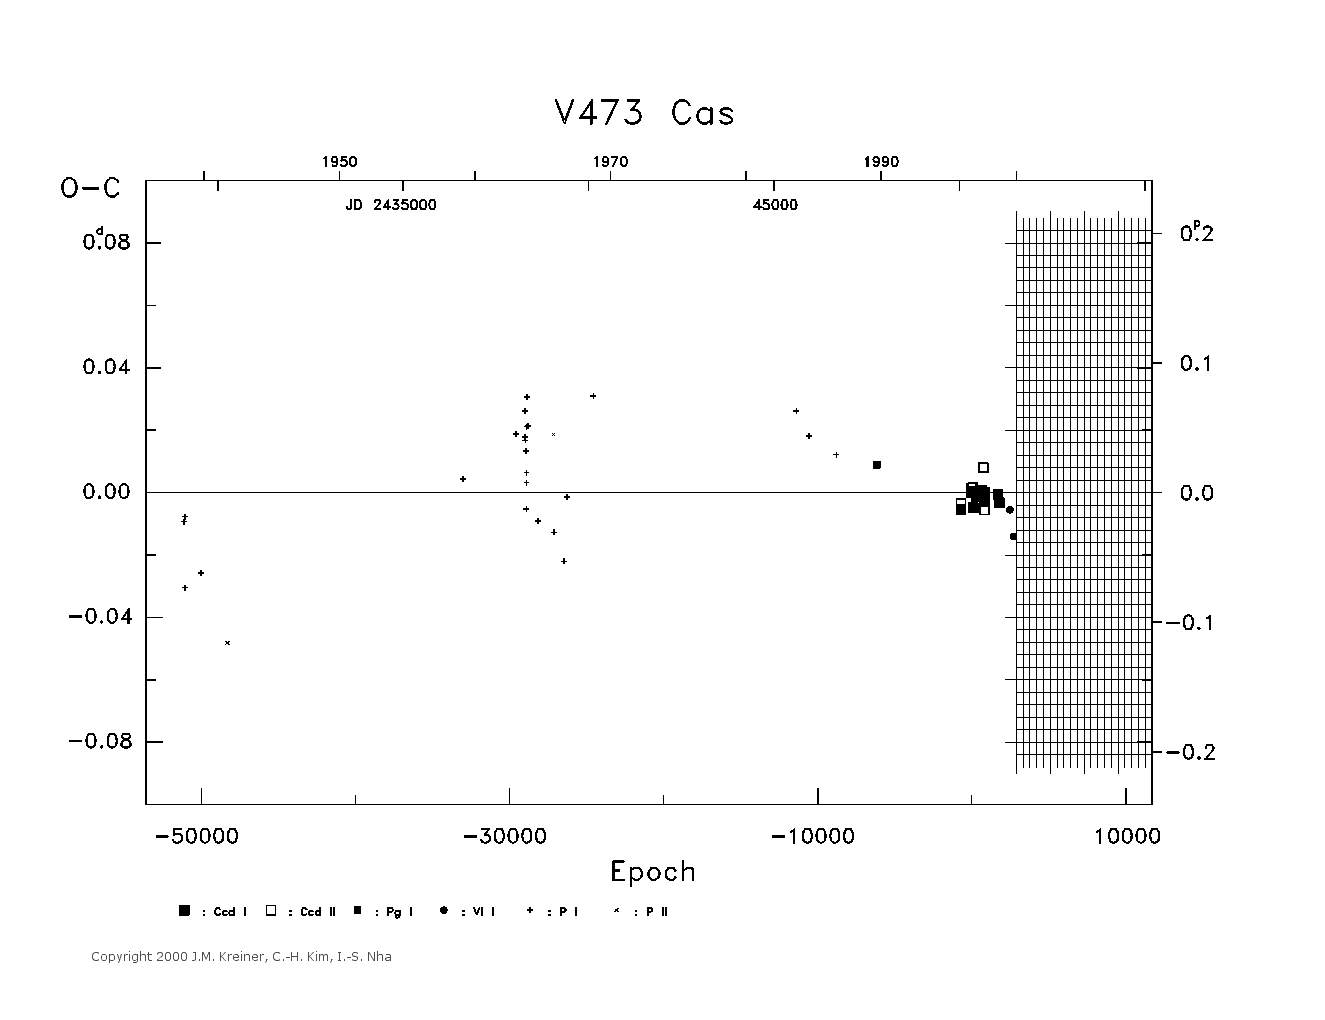 [IMAGE: large V473 CAS O-C diagram]